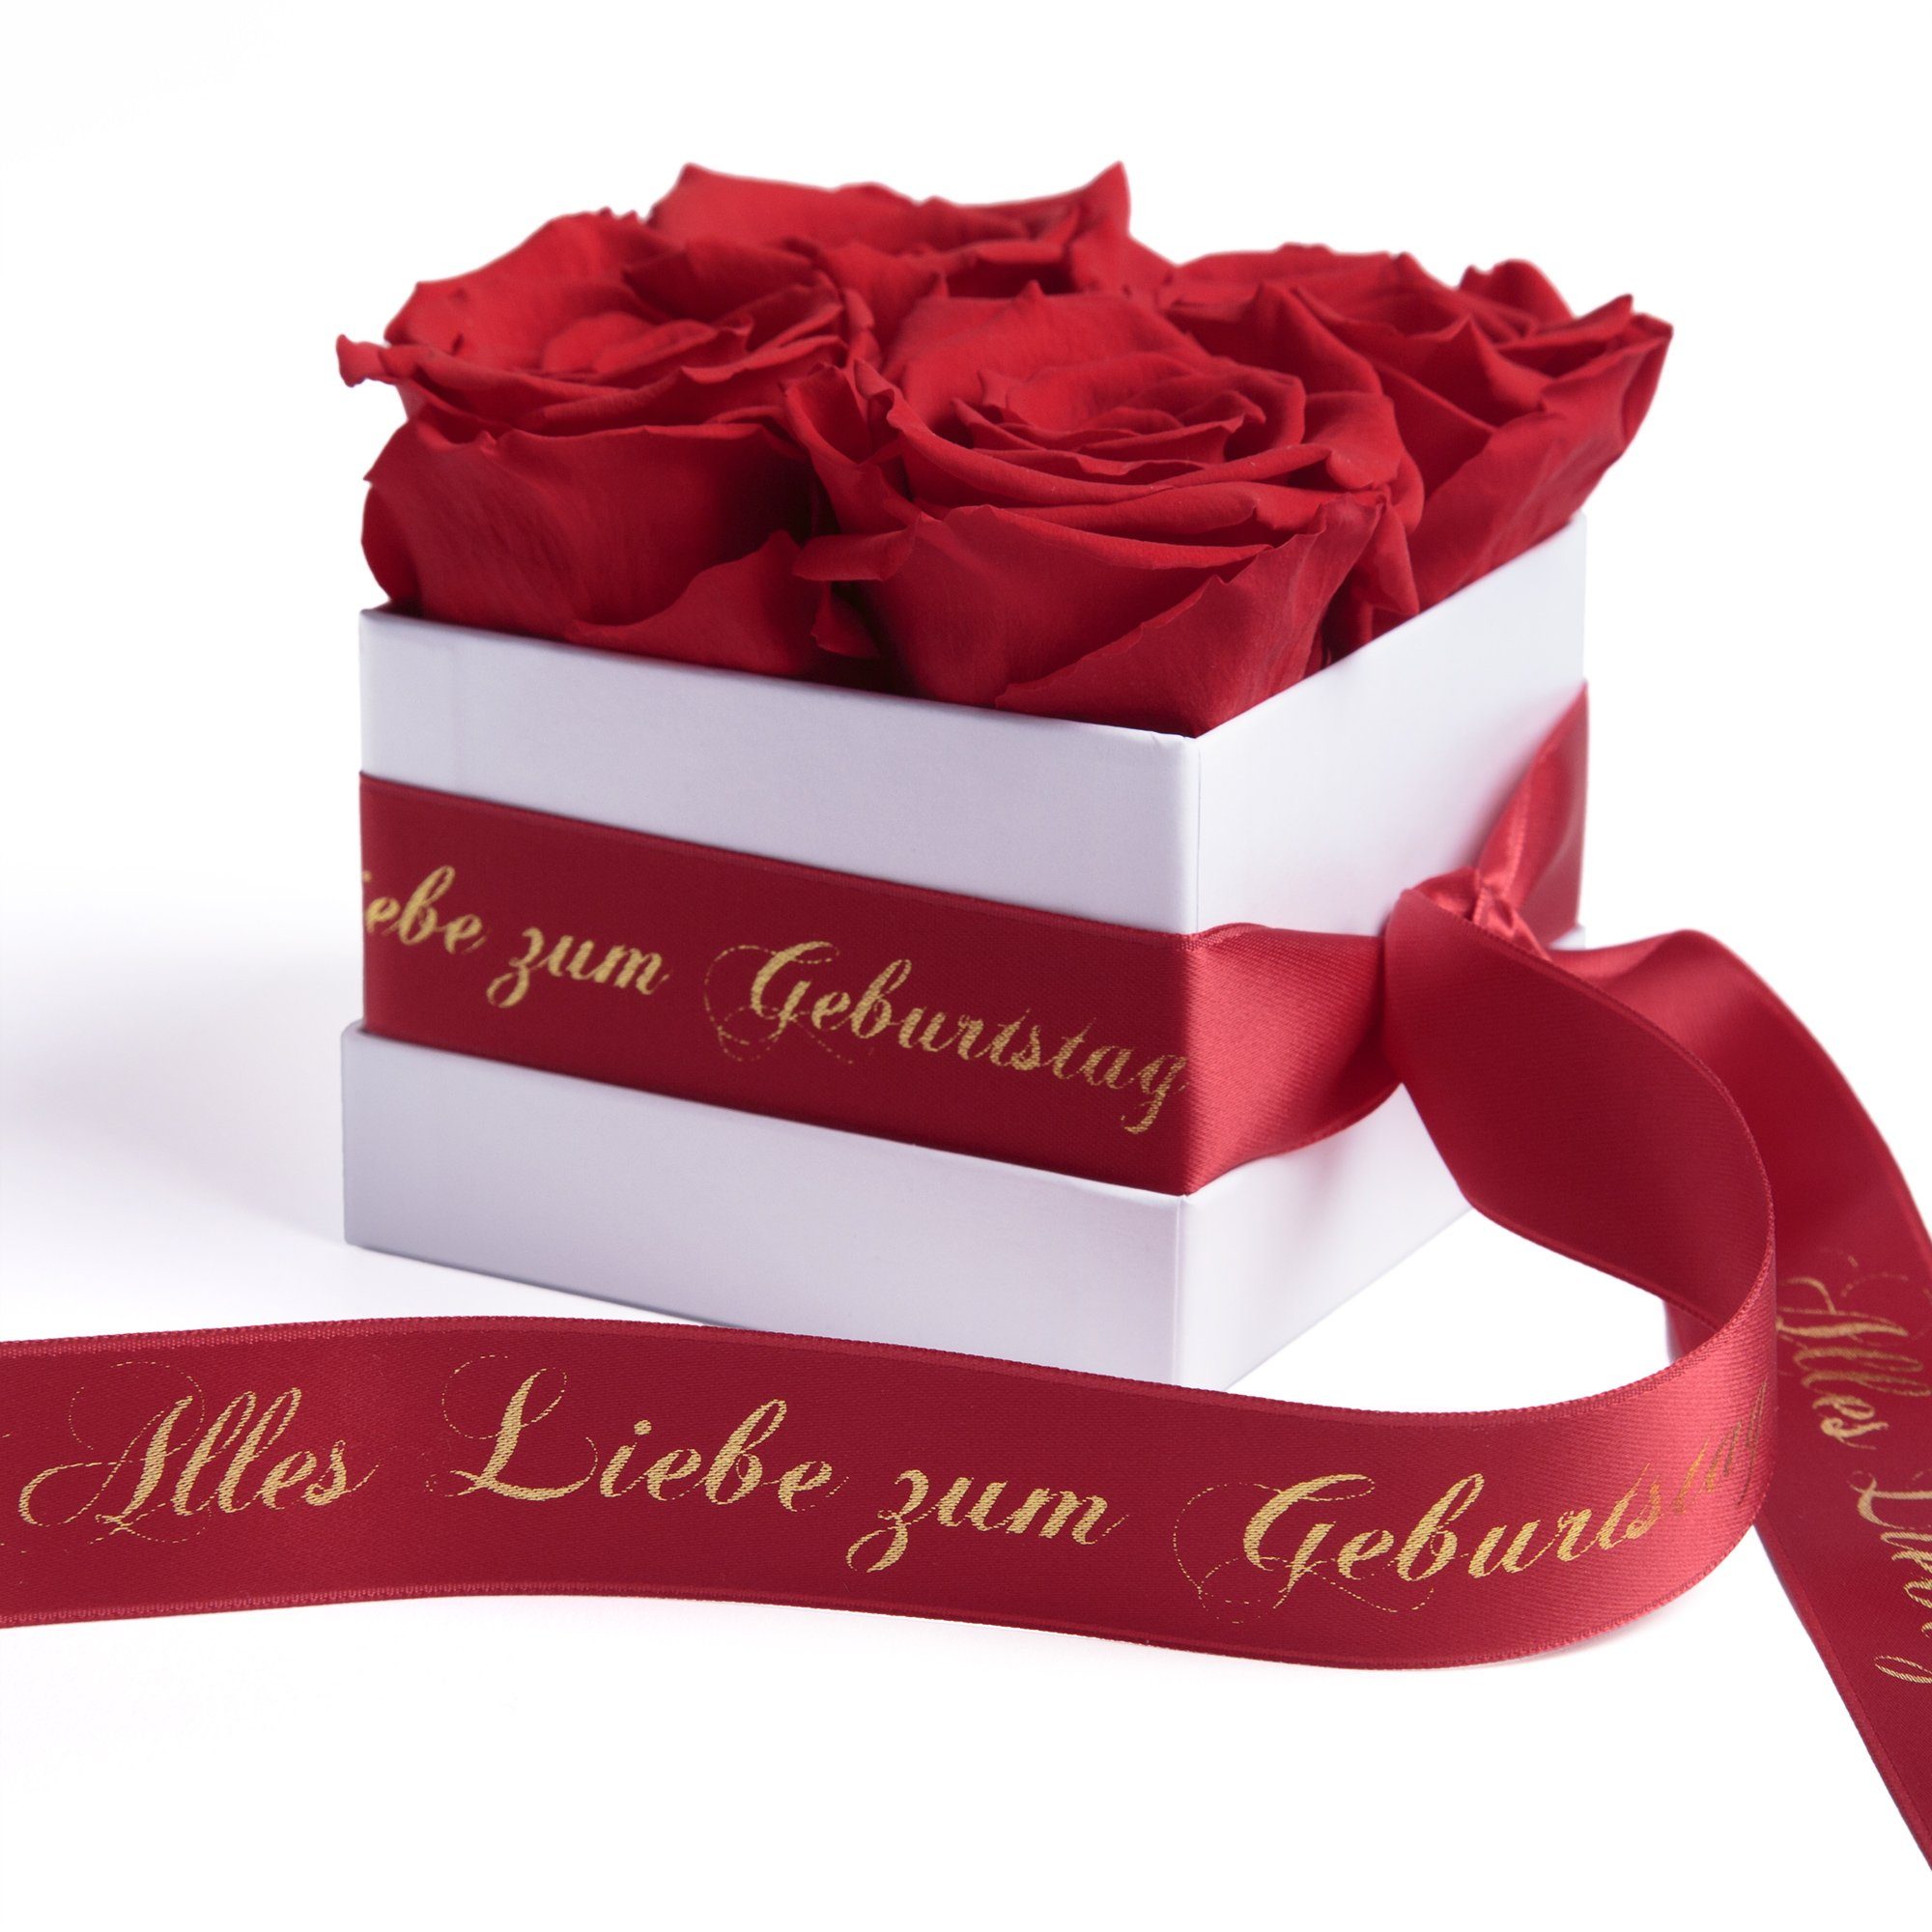 ROSEMARIE SCHULZ Heidelberg Dekoobjekt Infinity Rosenbox Alles Liebe zum Geburtstag Blumen Geschenk, Echte Rose haltbar bis zu 3 Jahre rot